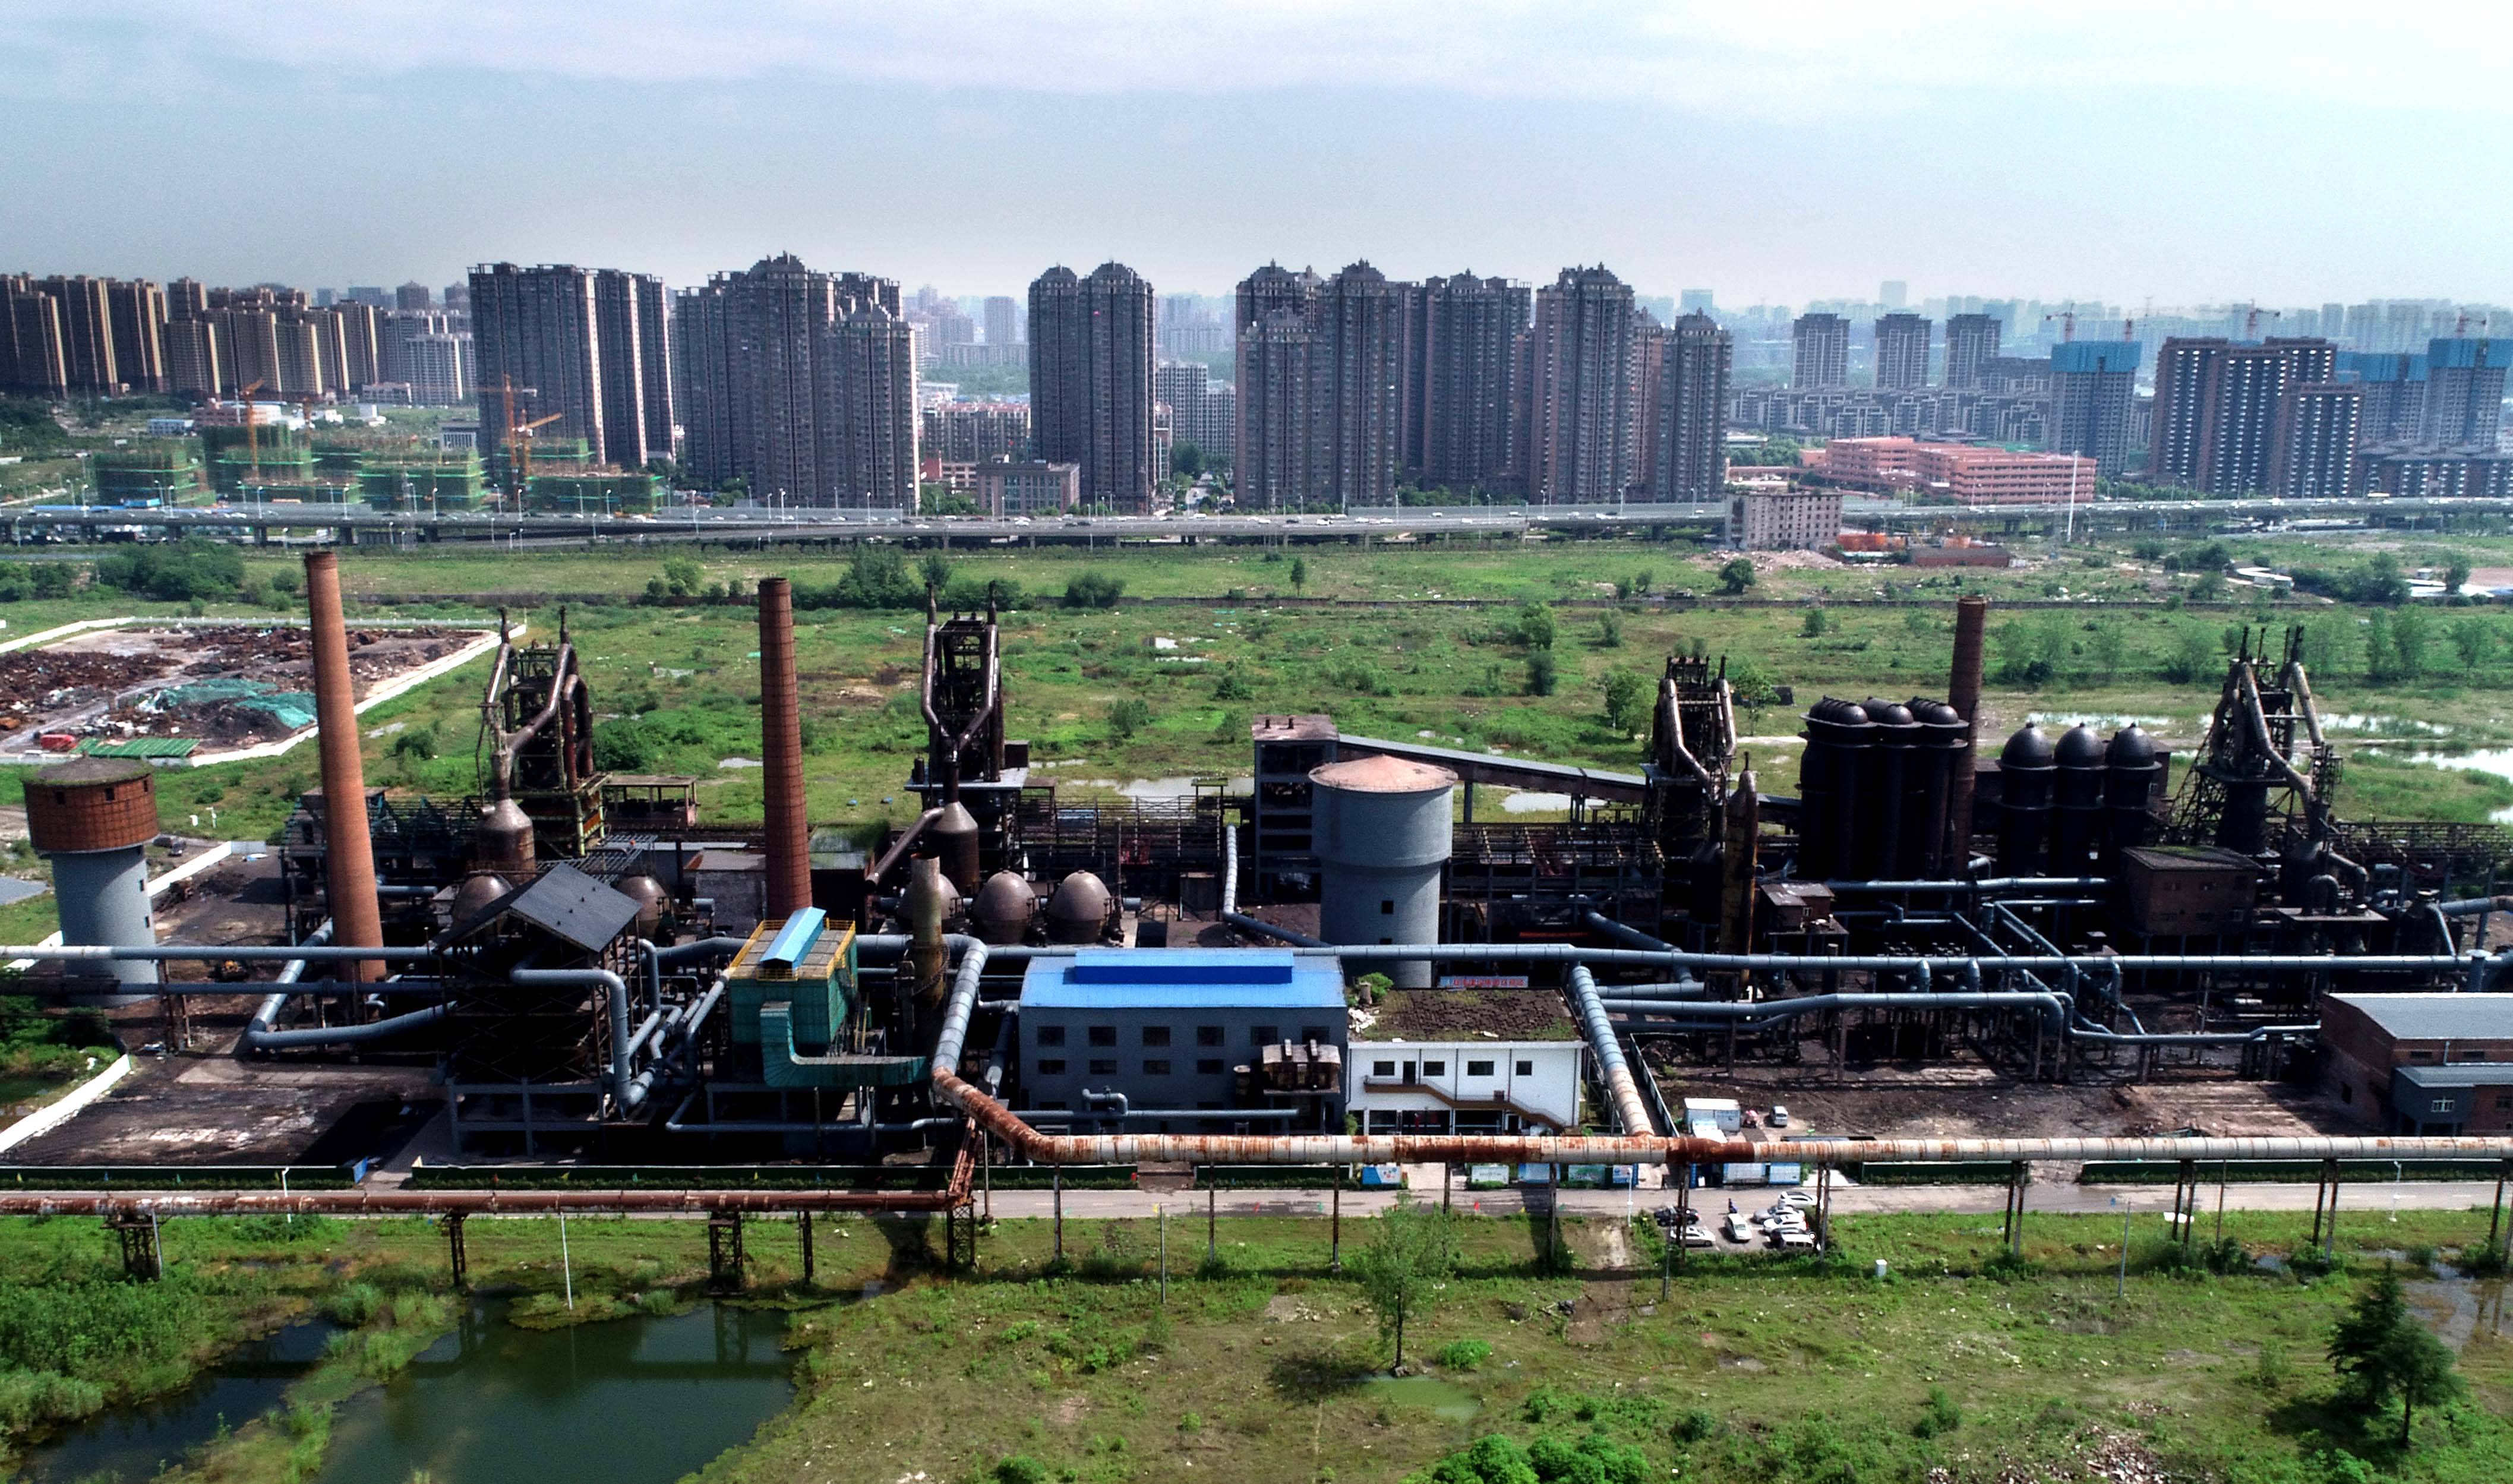 这是5月27日拍摄的原合肥钢铁厂高炉区(无人机照片).